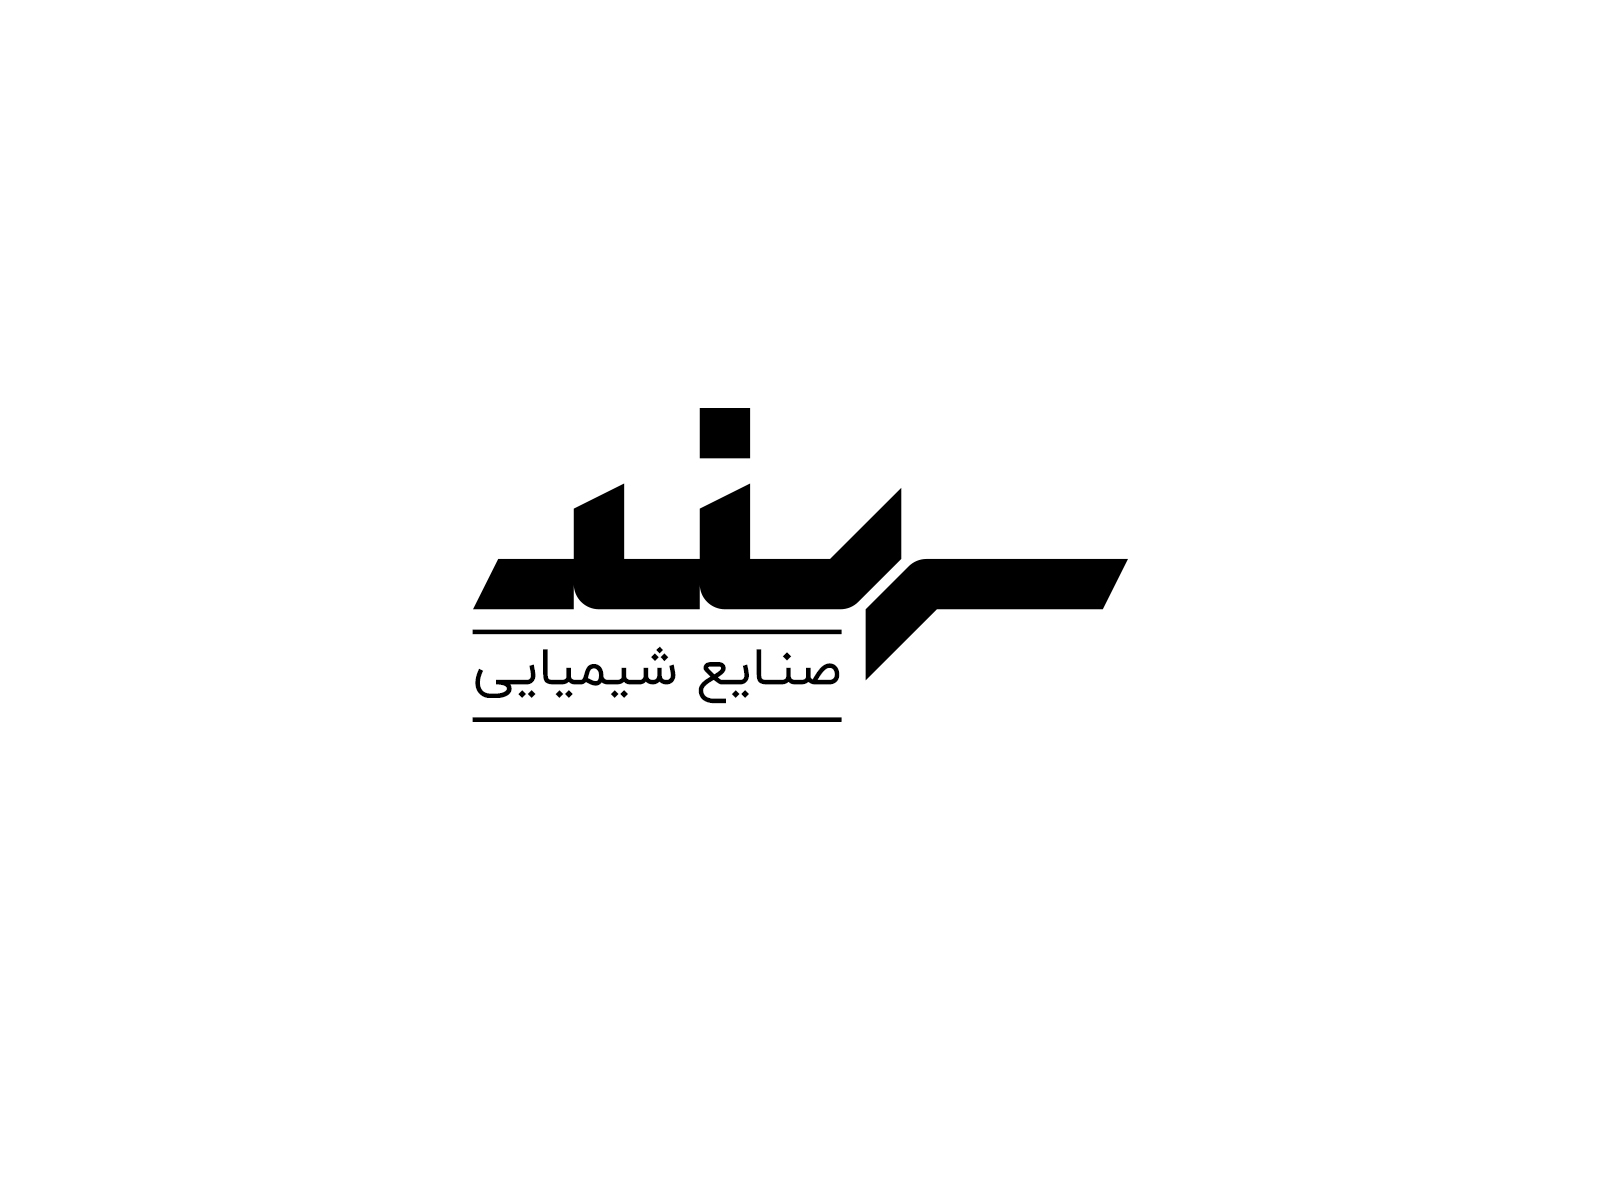 Sahand logotype by Abolfazl eskandari on Dribbble